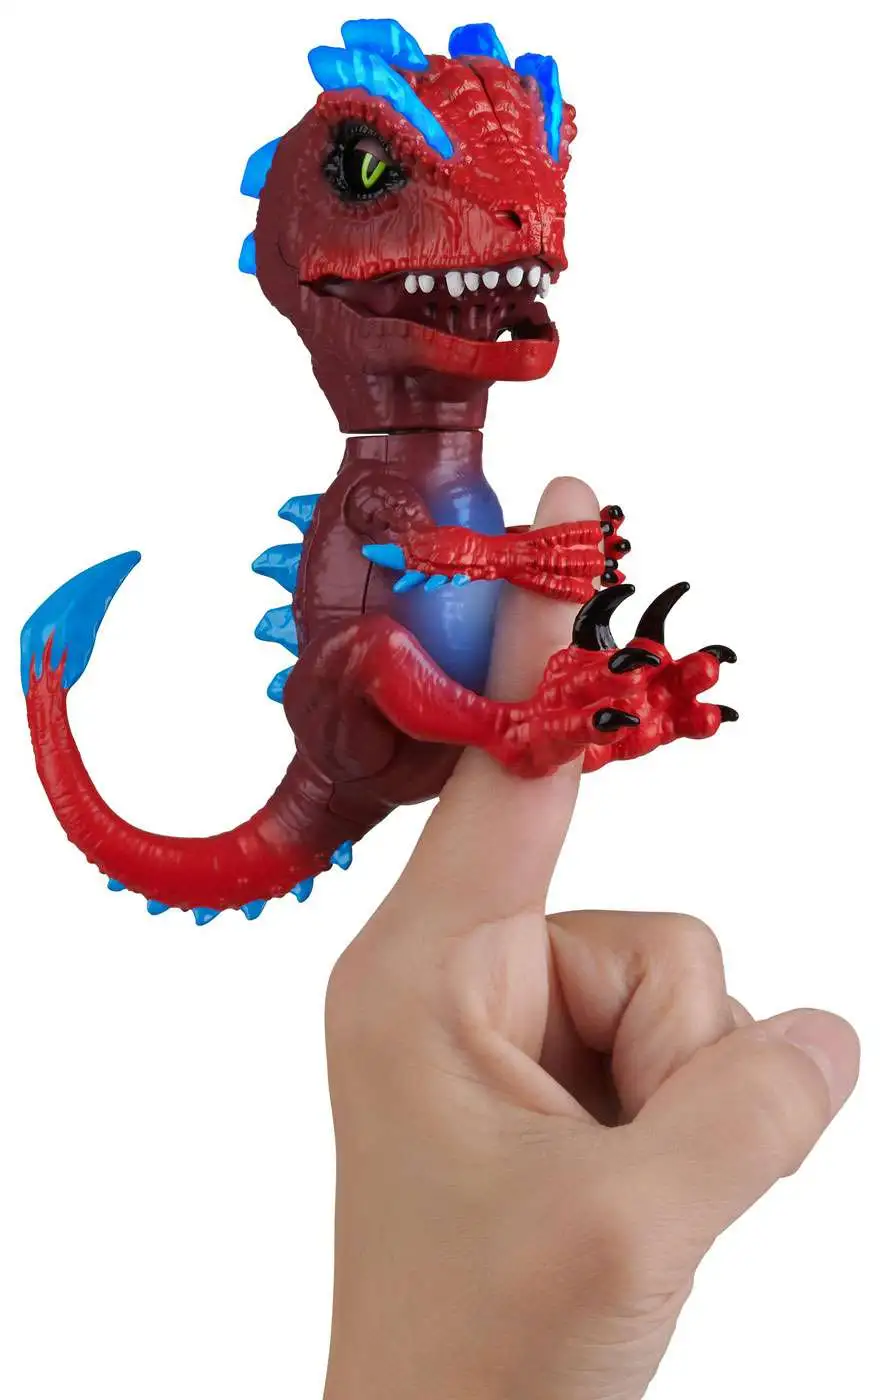 2 WowWee Untamed Radioactive Gamma Rampage Raptor Dinosaur Fingerlings for sale online 